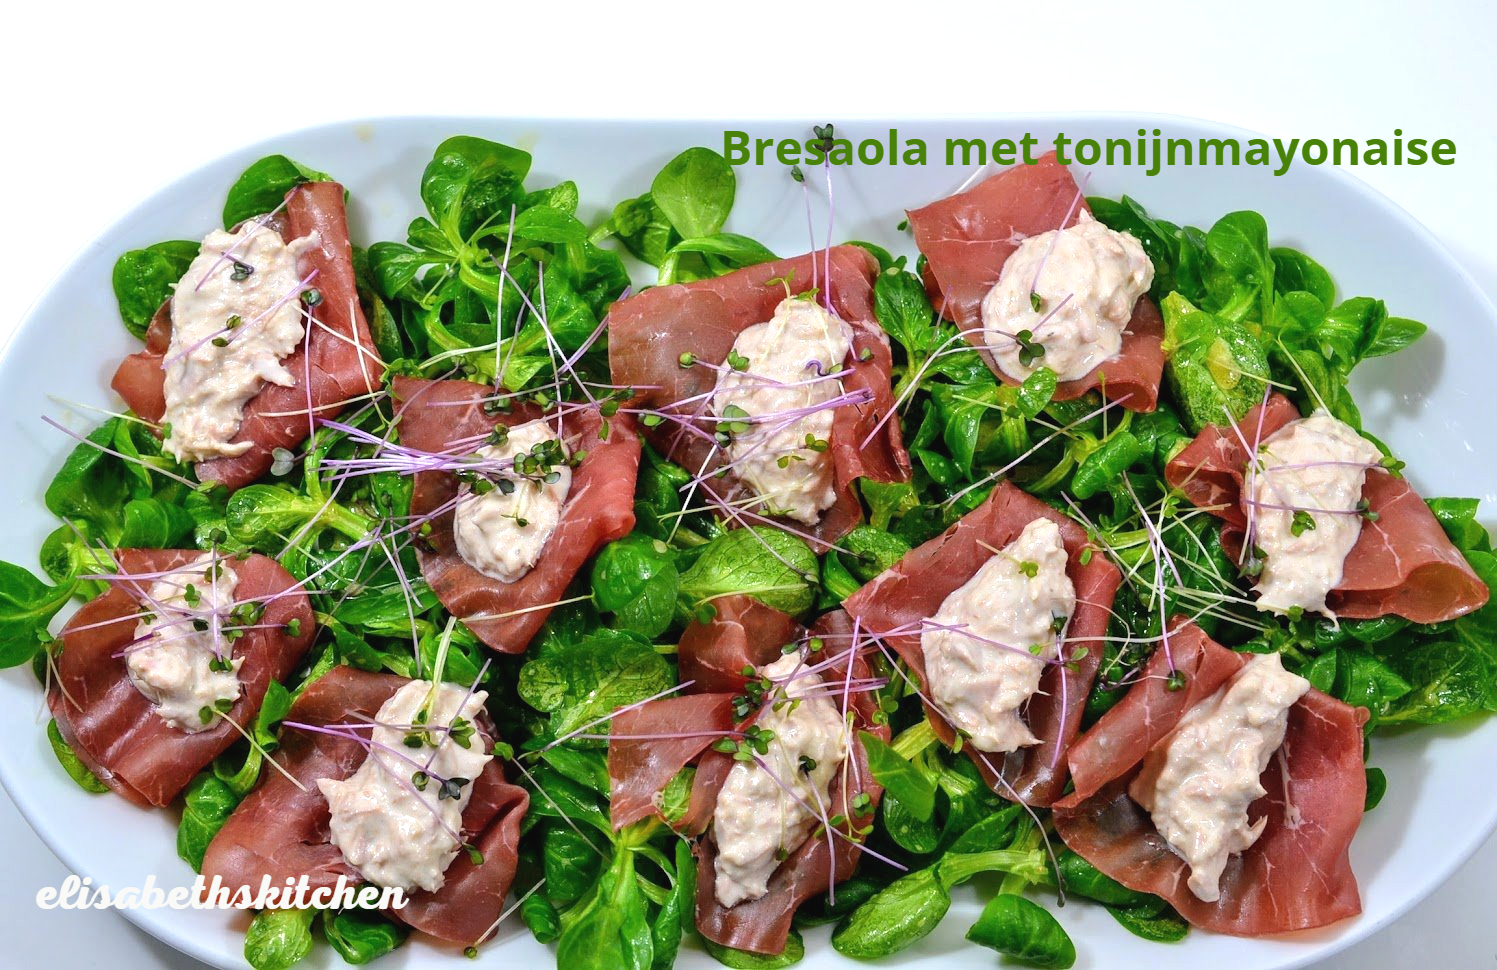 Bresaola met tonijnmayonaise